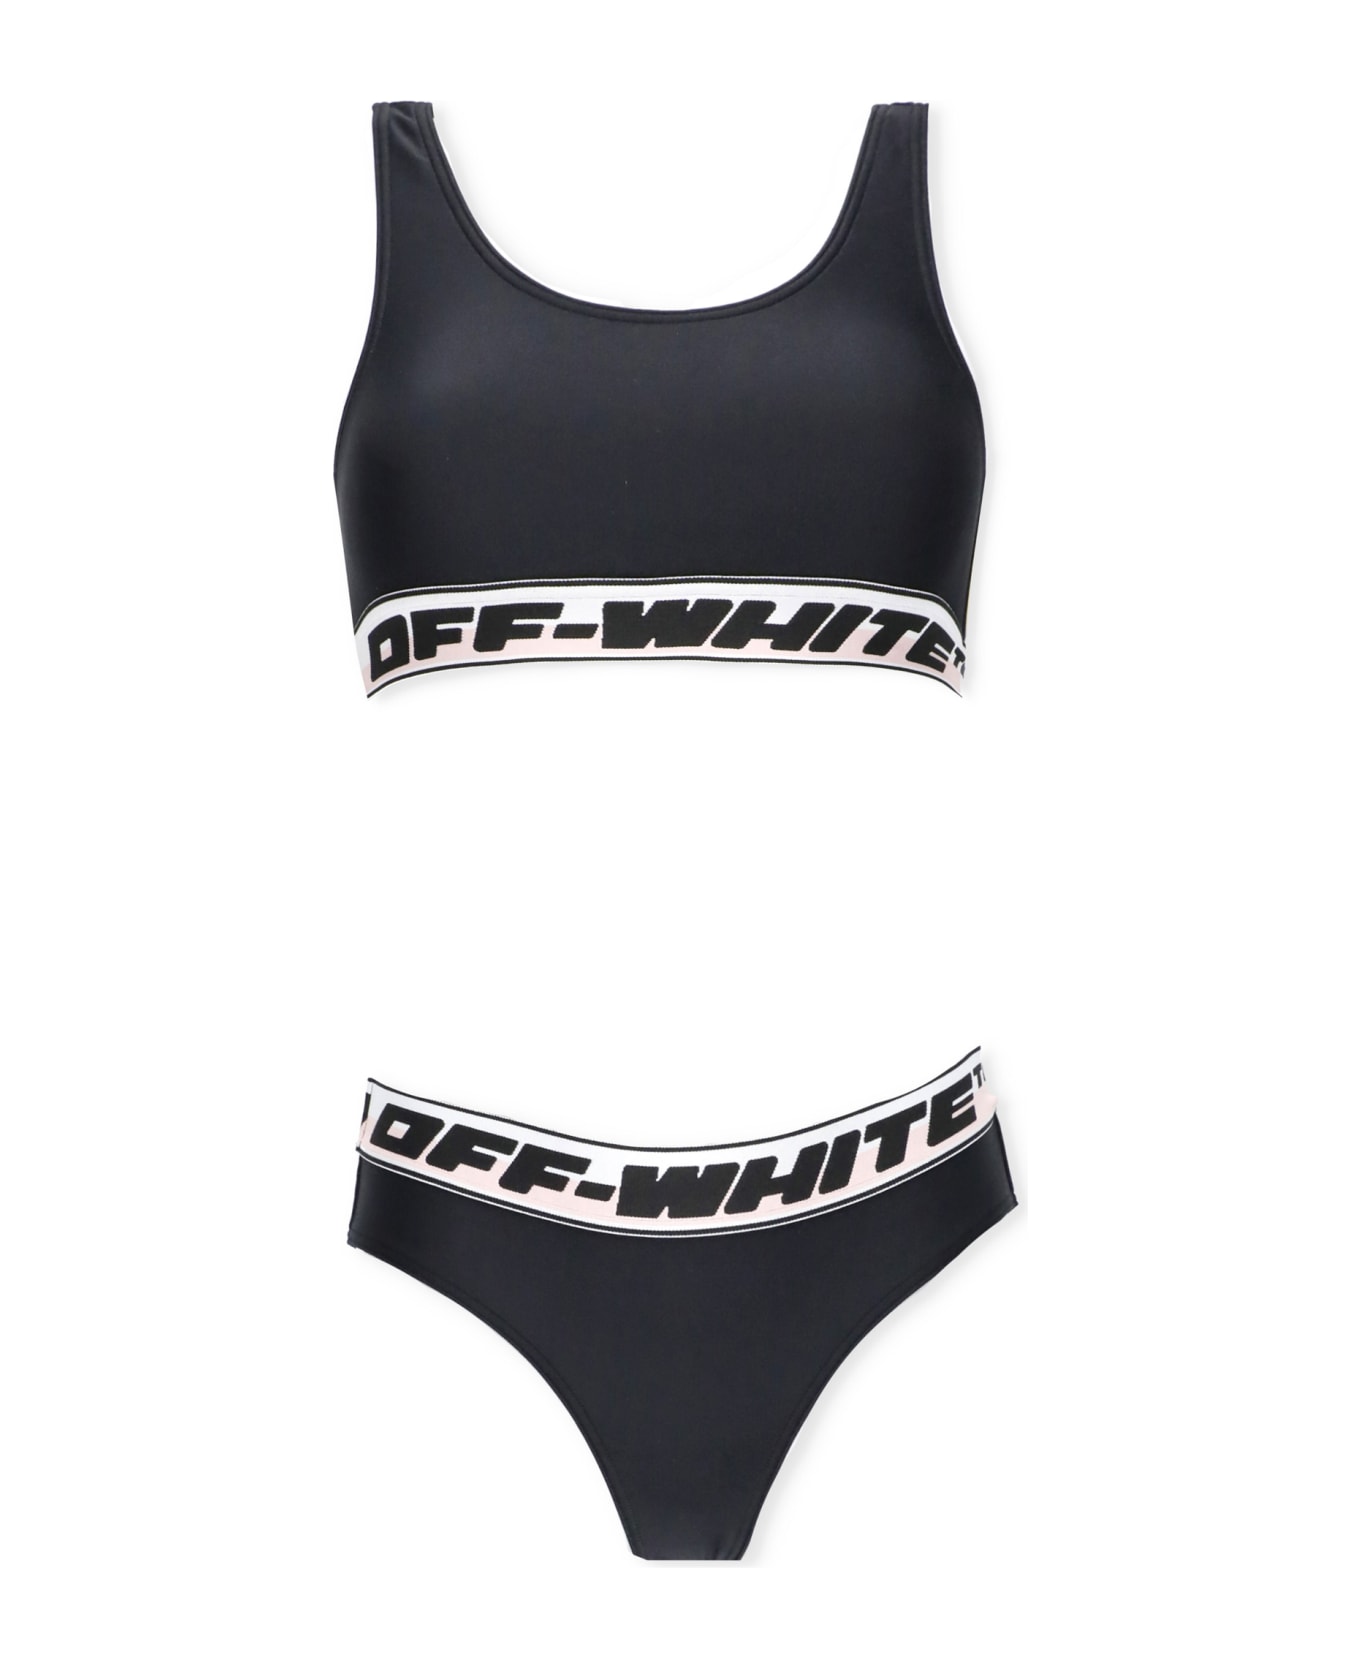 Off-White Two-piece Bikini With Logo - Black Black